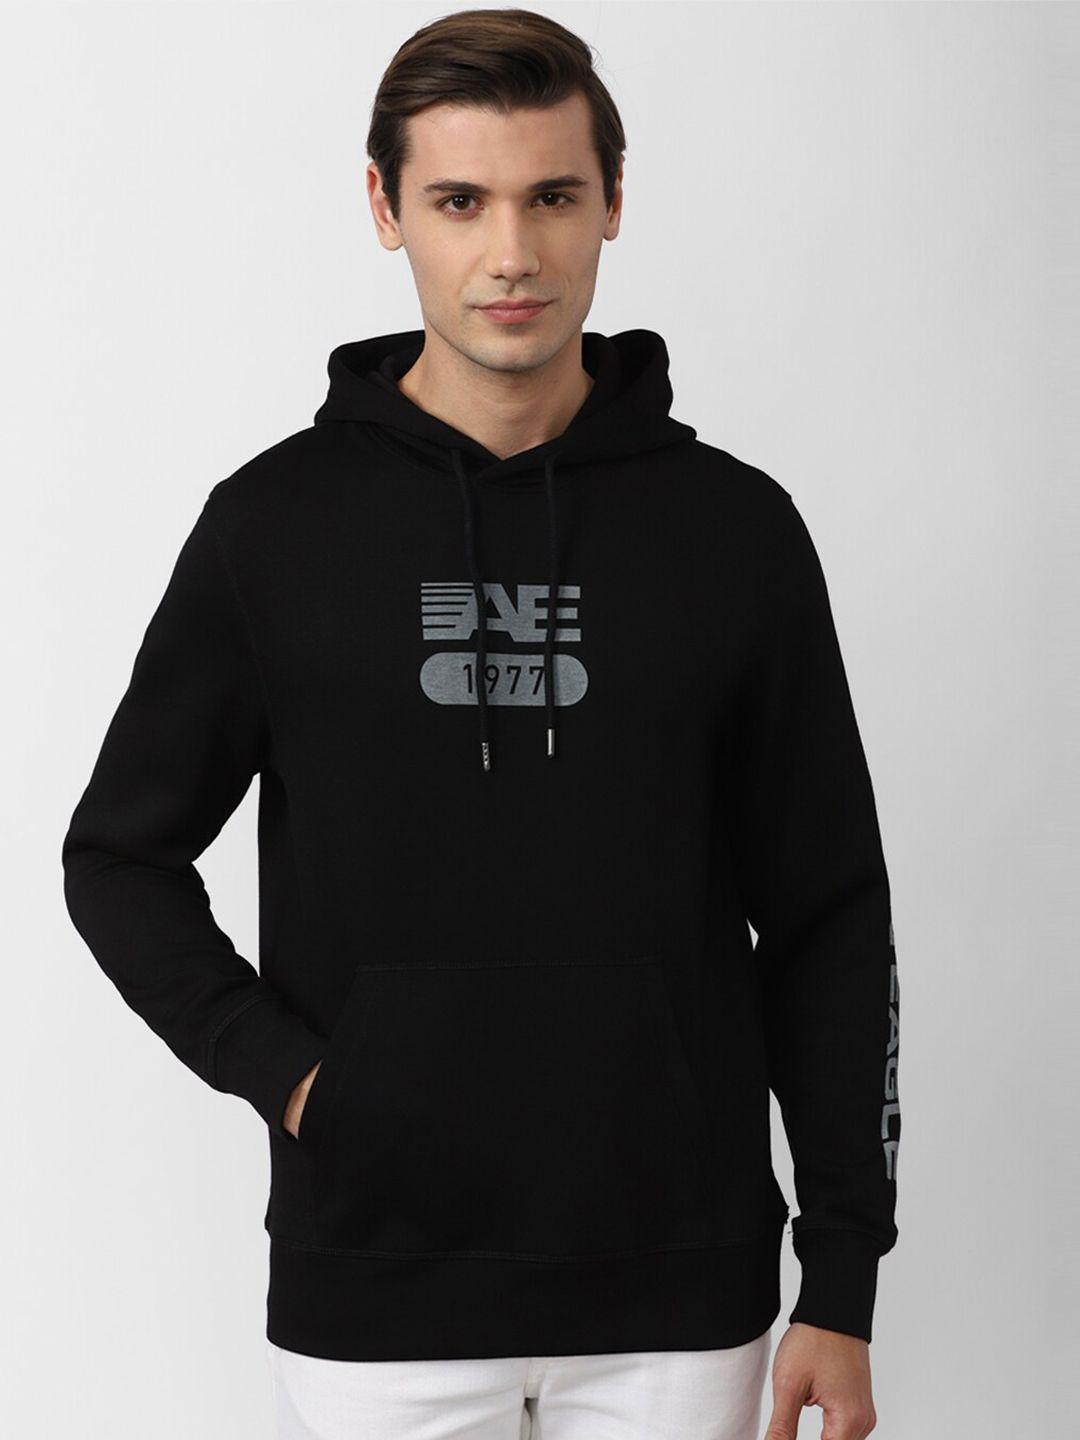 american-eagle-outfitters-men-black-printed-hooded-sweatshirt